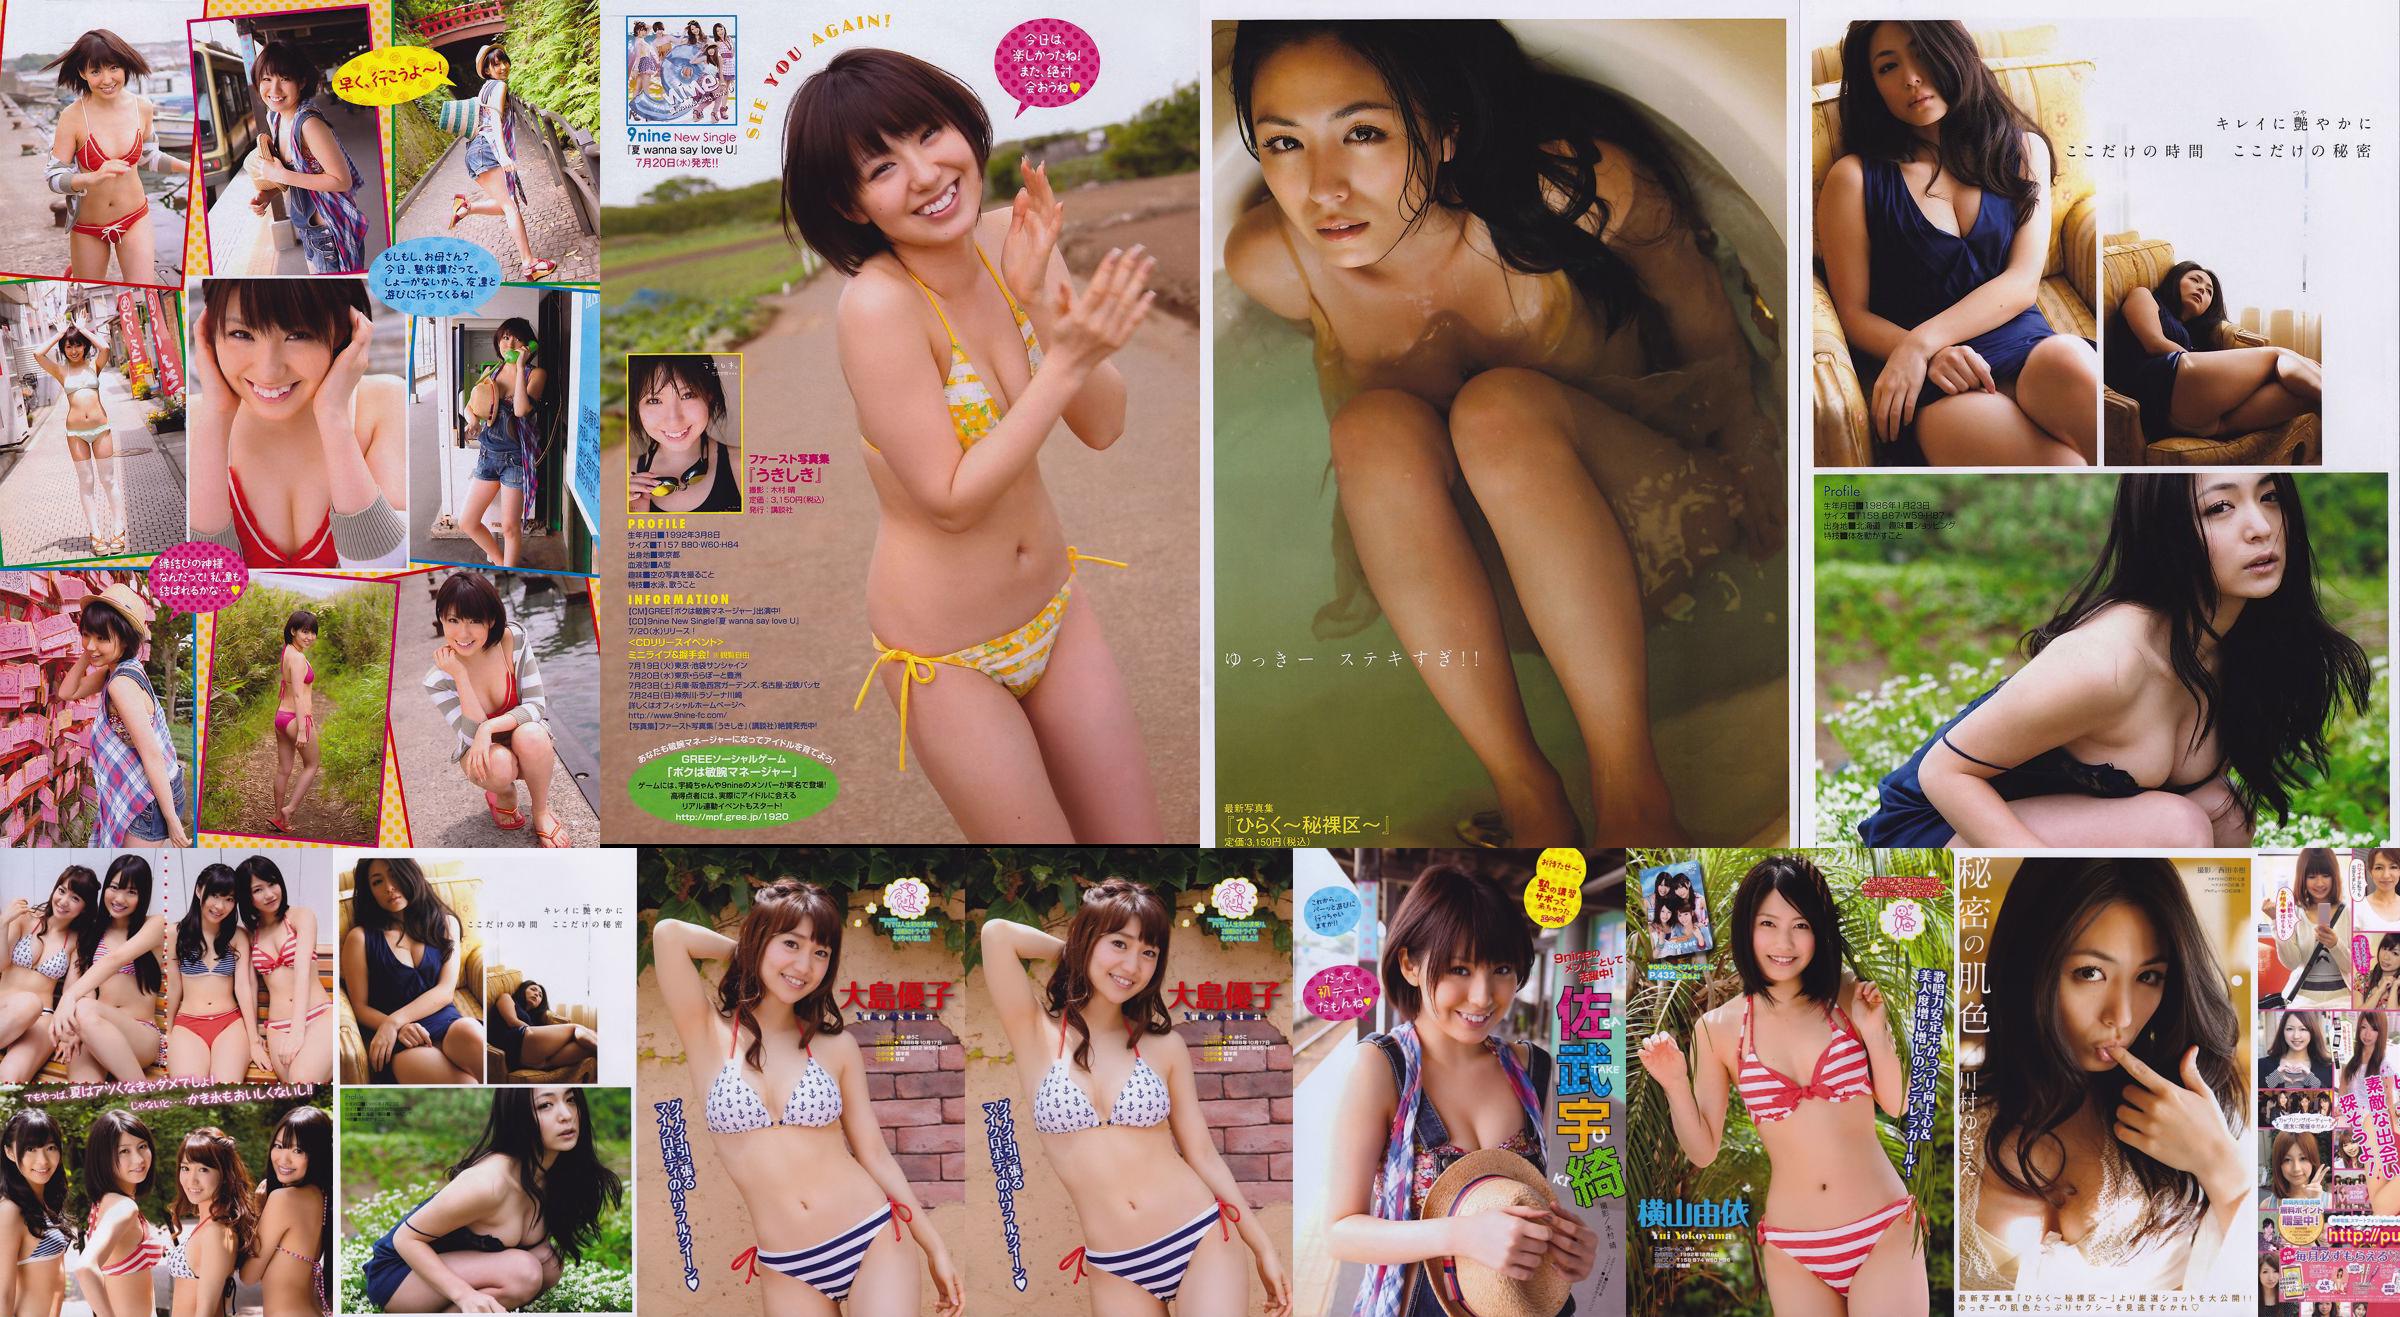 [Young Magazine] Noch nicht Kawamura ake き え Satake Uki 2011 No.32 Photo Magazine No.134128 Seite 1